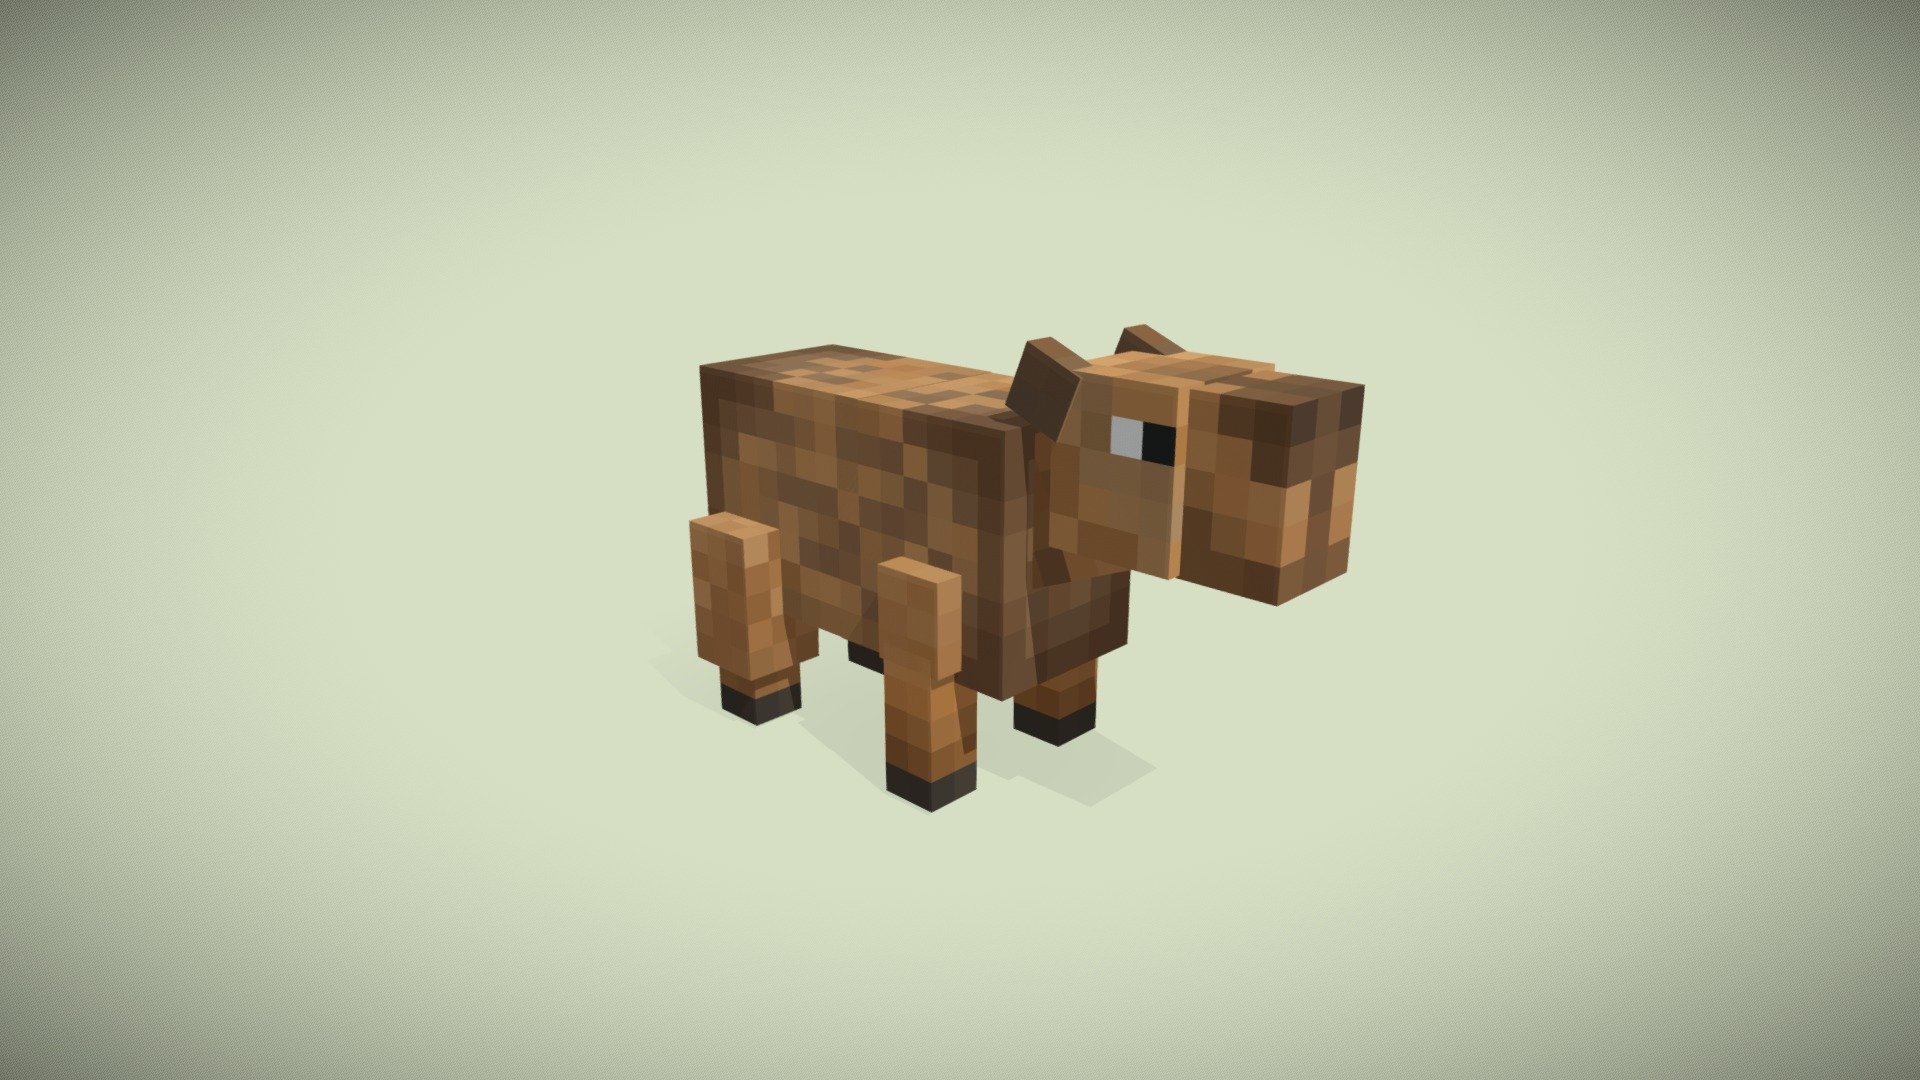 Capybara in Minecraft